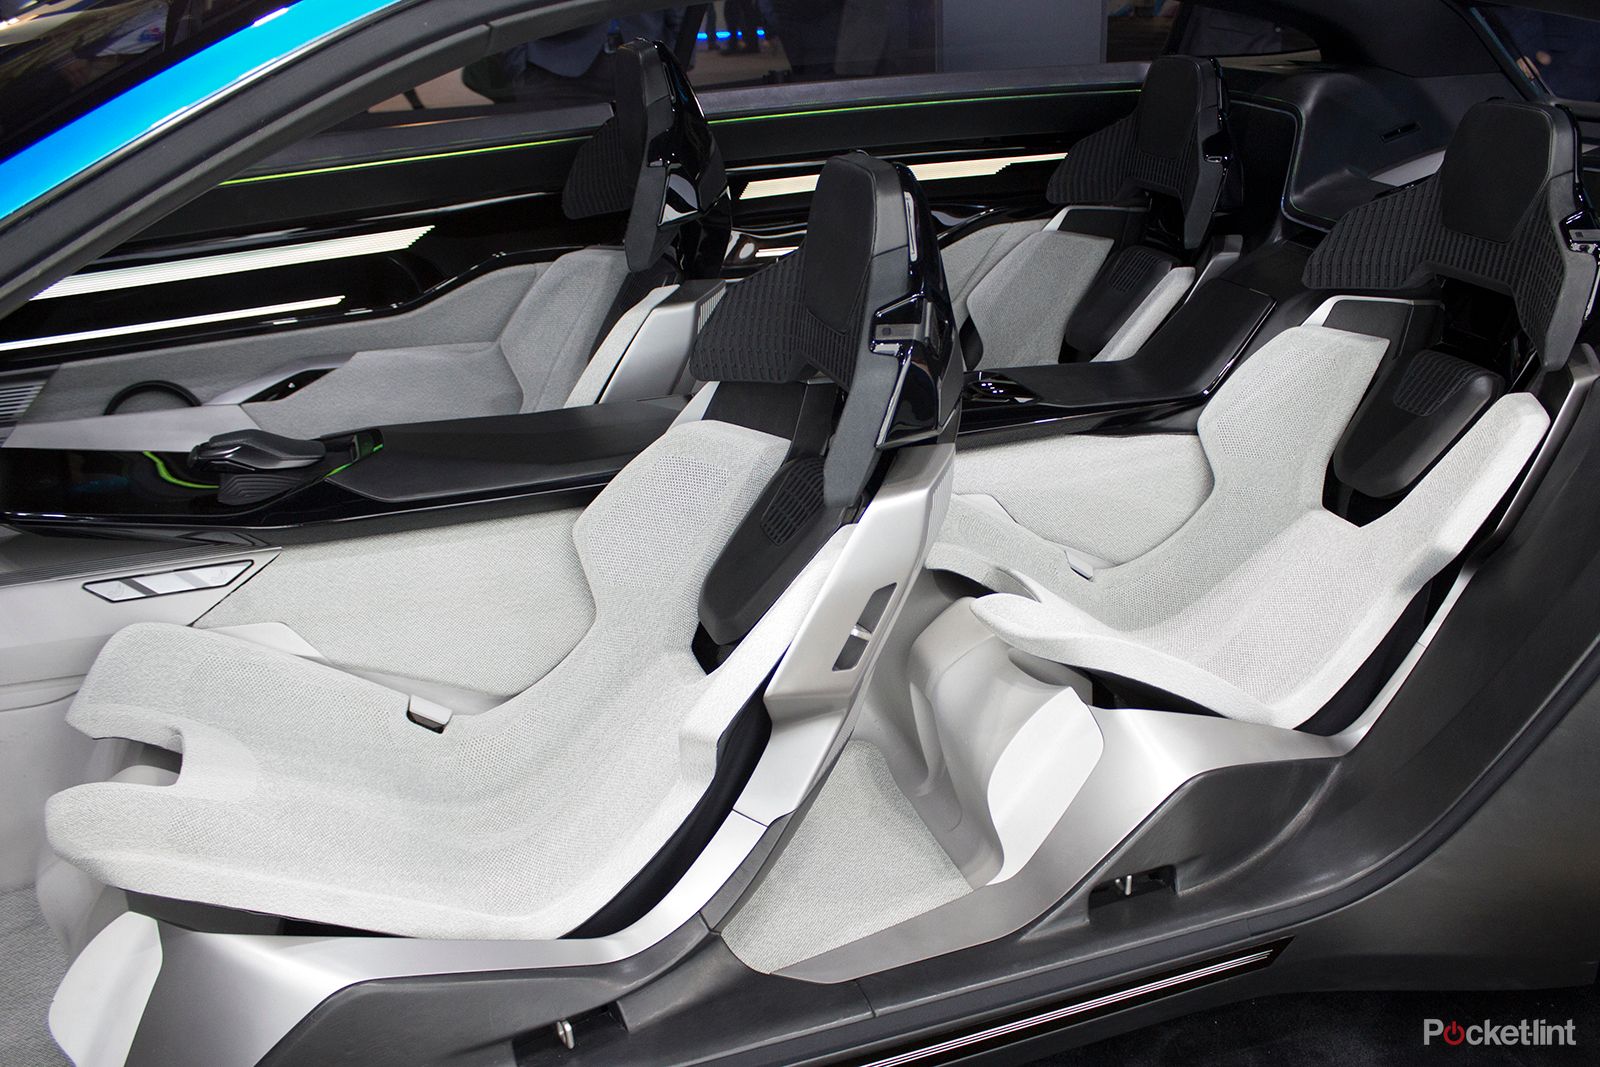 stunning instinct concept car shows peugeot s vision of an autonomous driving future image 9